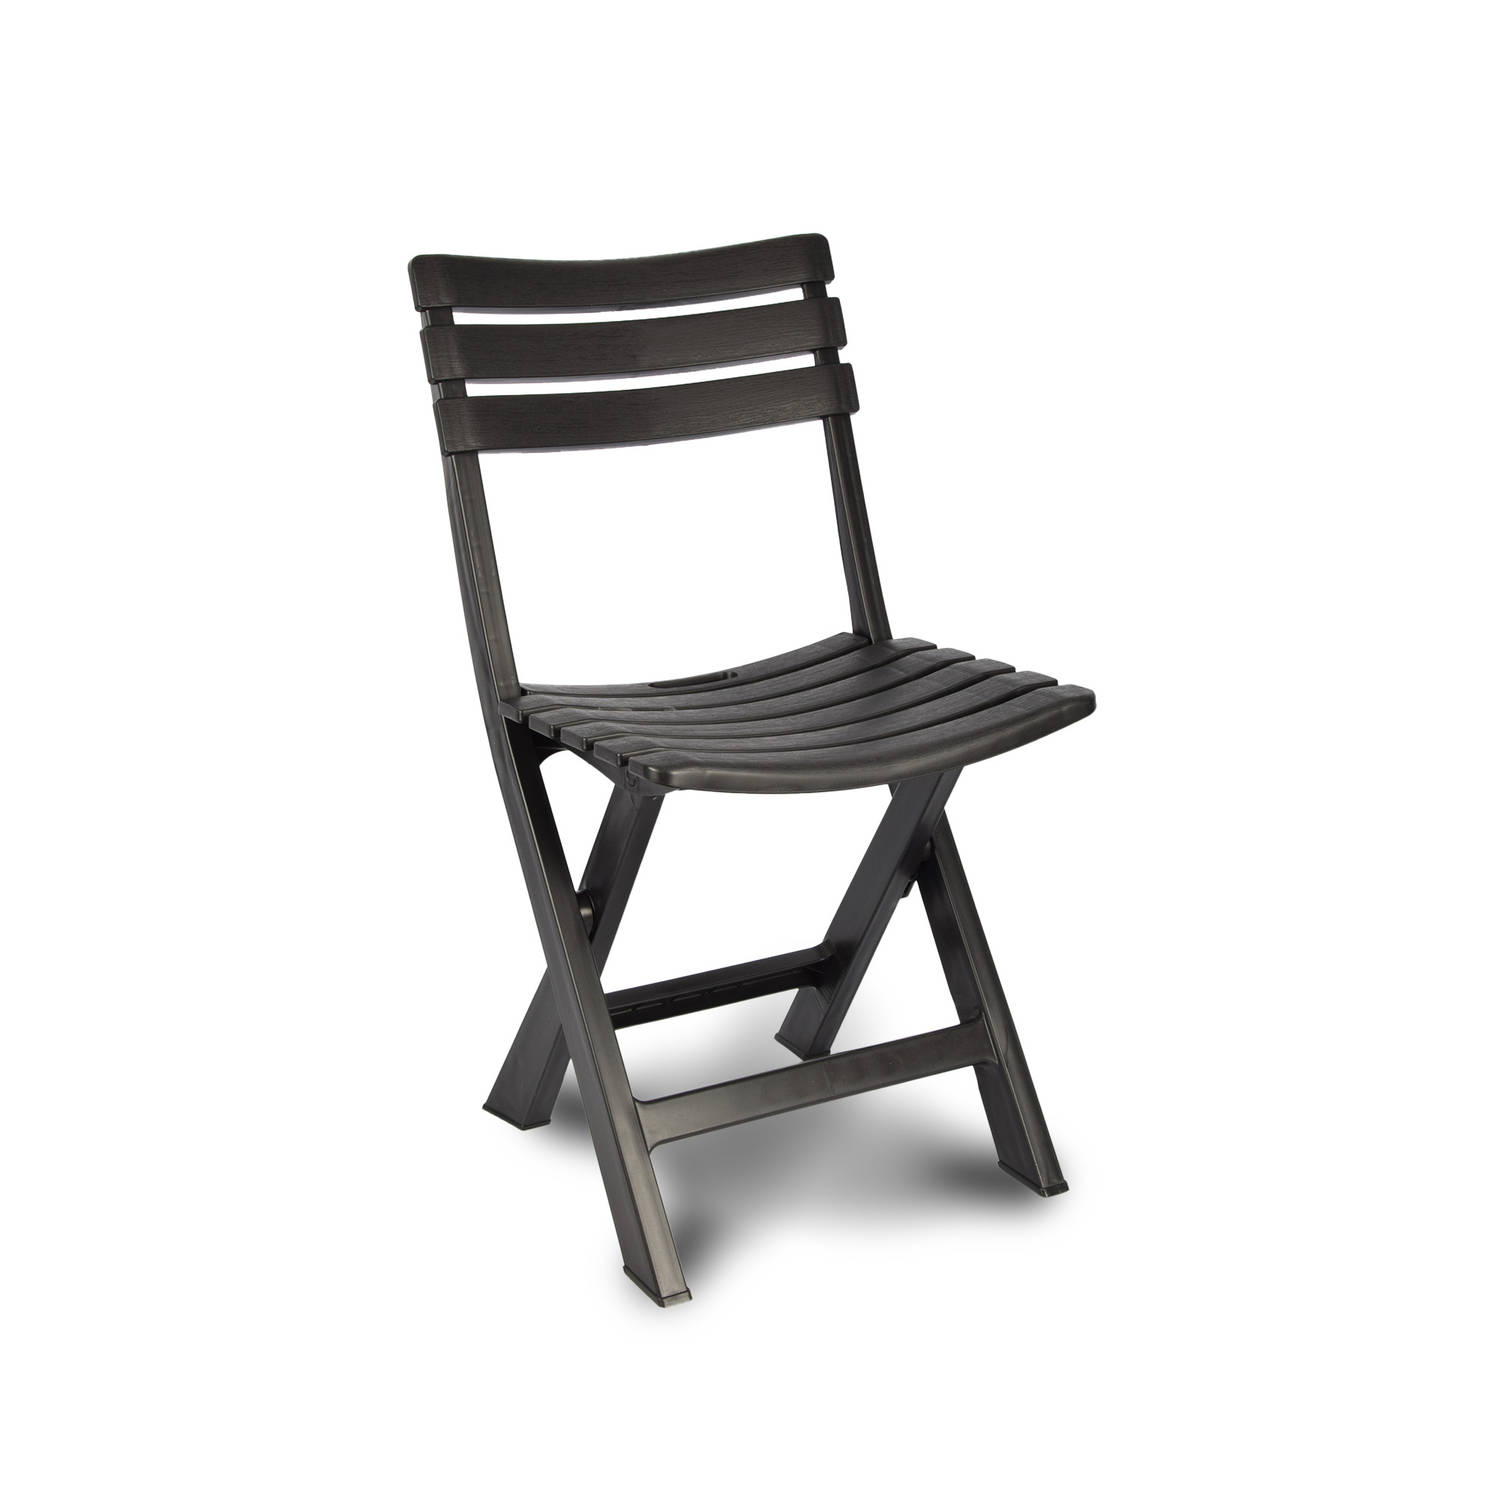 Klapstoel Opvouwbare stoel Campingstoel Tuinstoel Zwart Kunststof Duurzaam Comfortabel Voor binnen e